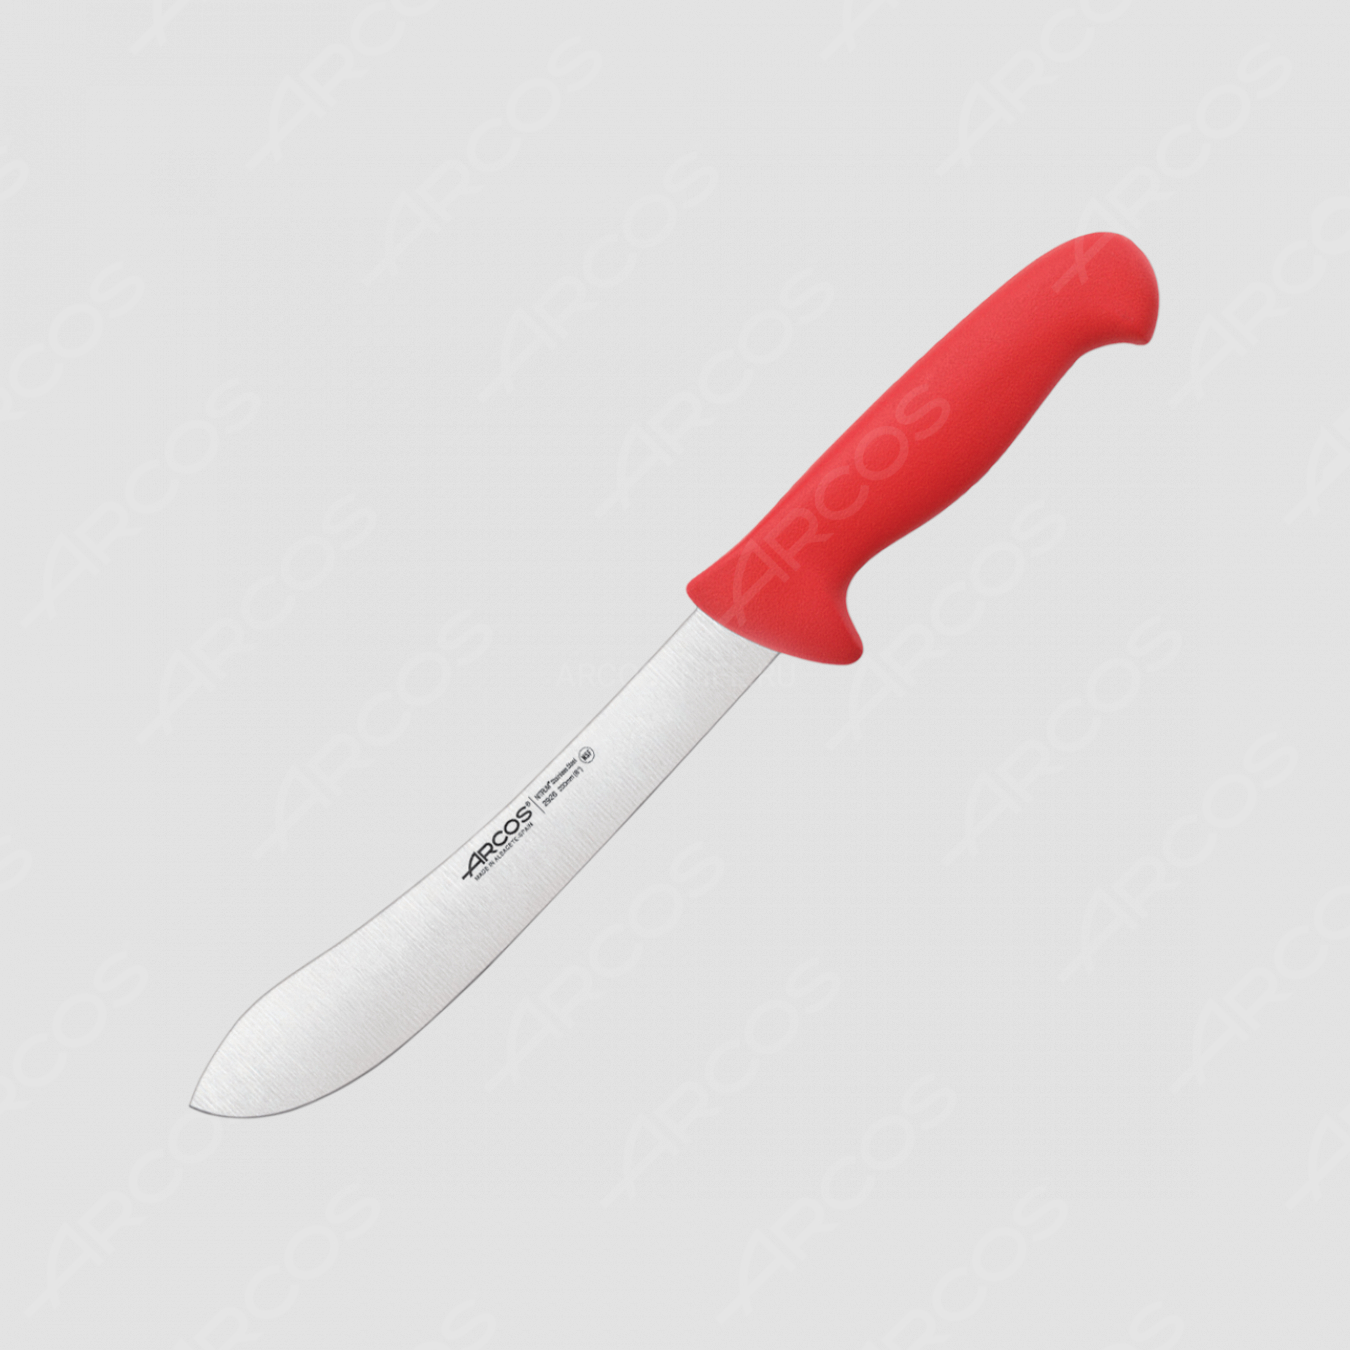 Нож кухонный для разделки 20 см, рукоять - красная, серия 2900, ARCOS, Испания